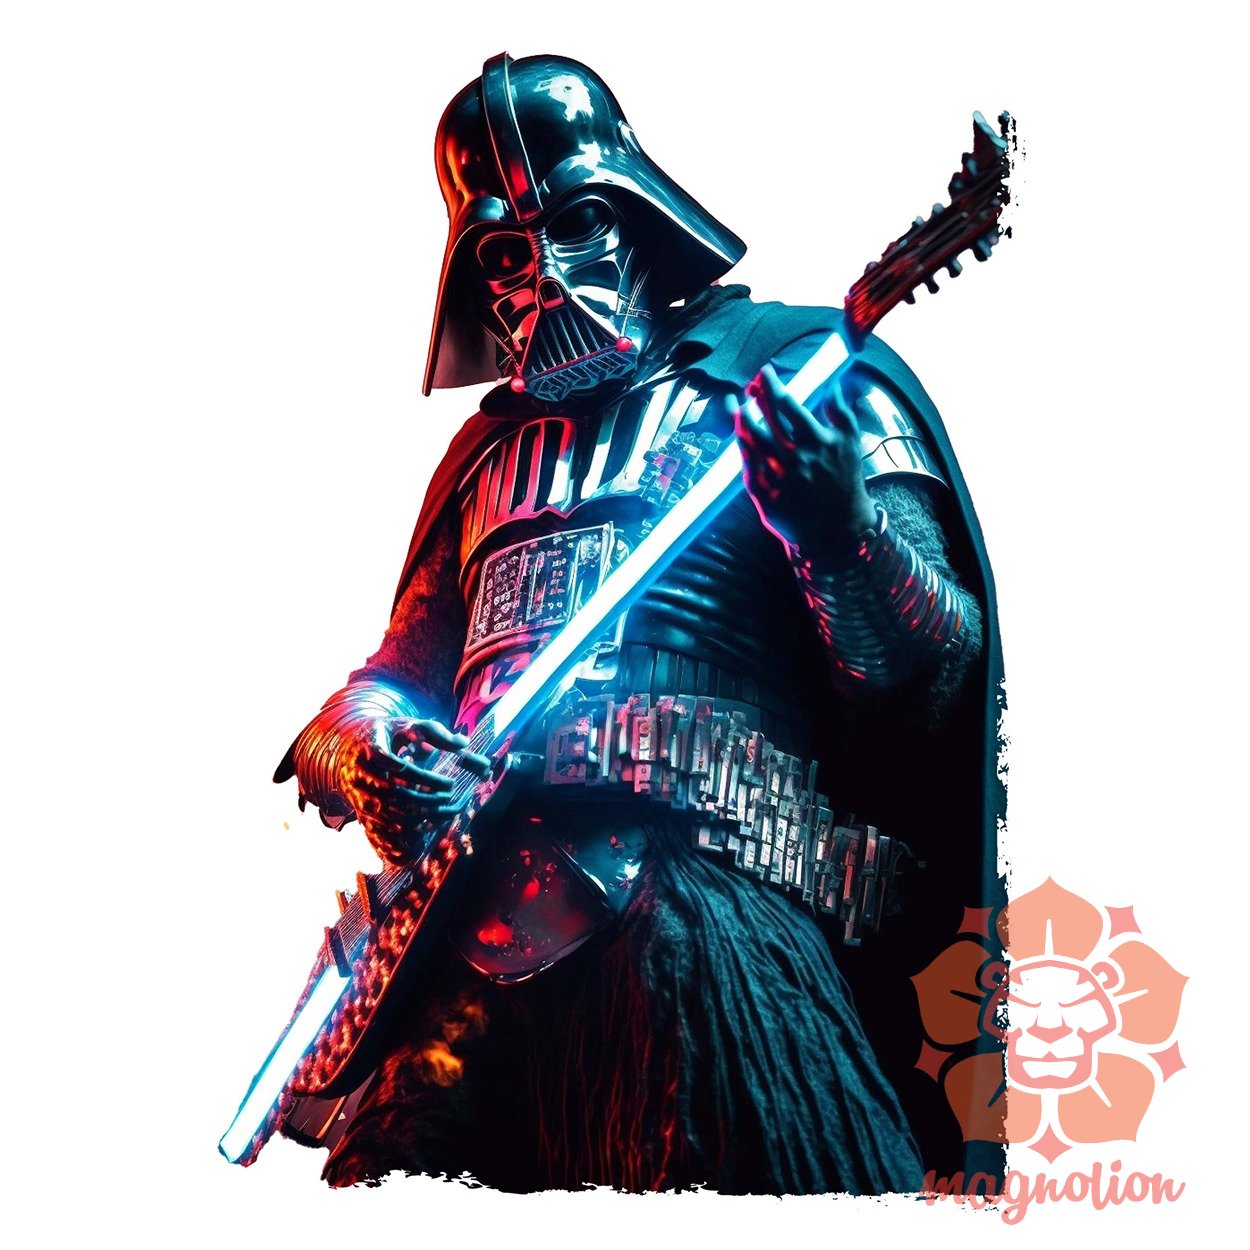 Vader rock